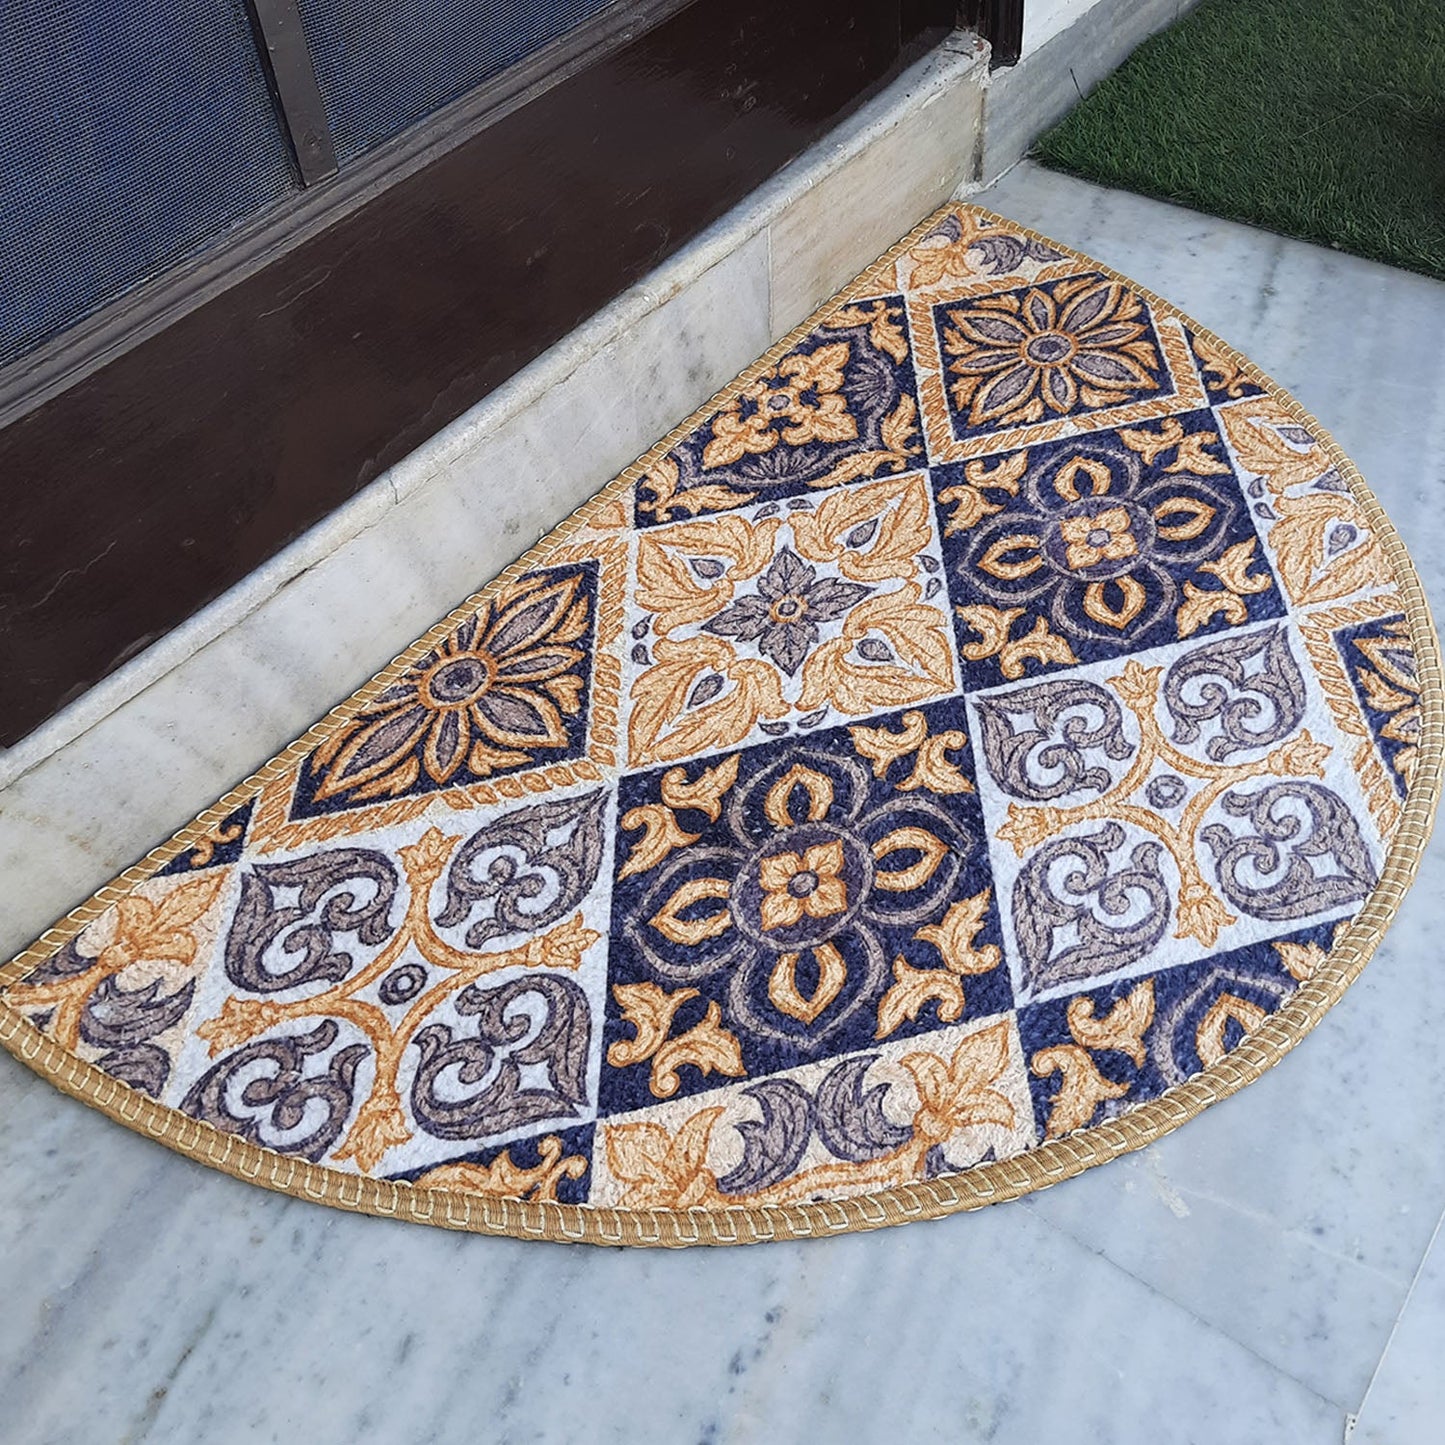 Avioni Home Floor Mats in Beautiful Moroccan Brown Design | Anti Slip, Durable & Washable | Outdoor & Indoor